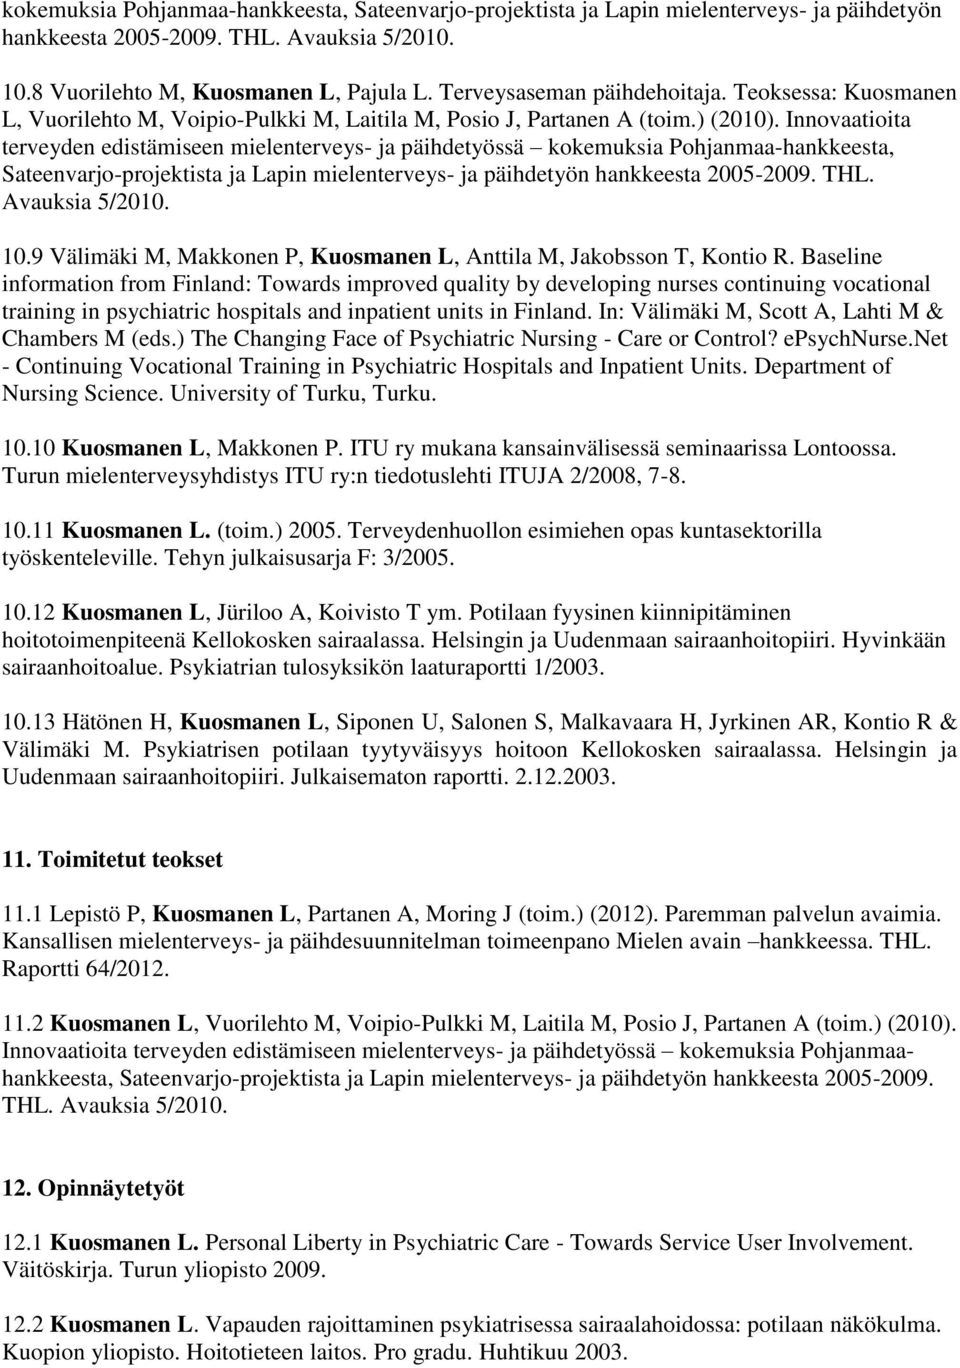 Innovaatioita terveyden edistämiseen mielenterveys- ja päihdetyössä kokemuksia Pohjanmaa-hankkeesta, Sateenvarjo-projektista ja Lapin mielenterveys- ja päihdetyön hankkeesta 2005-2009. THL.